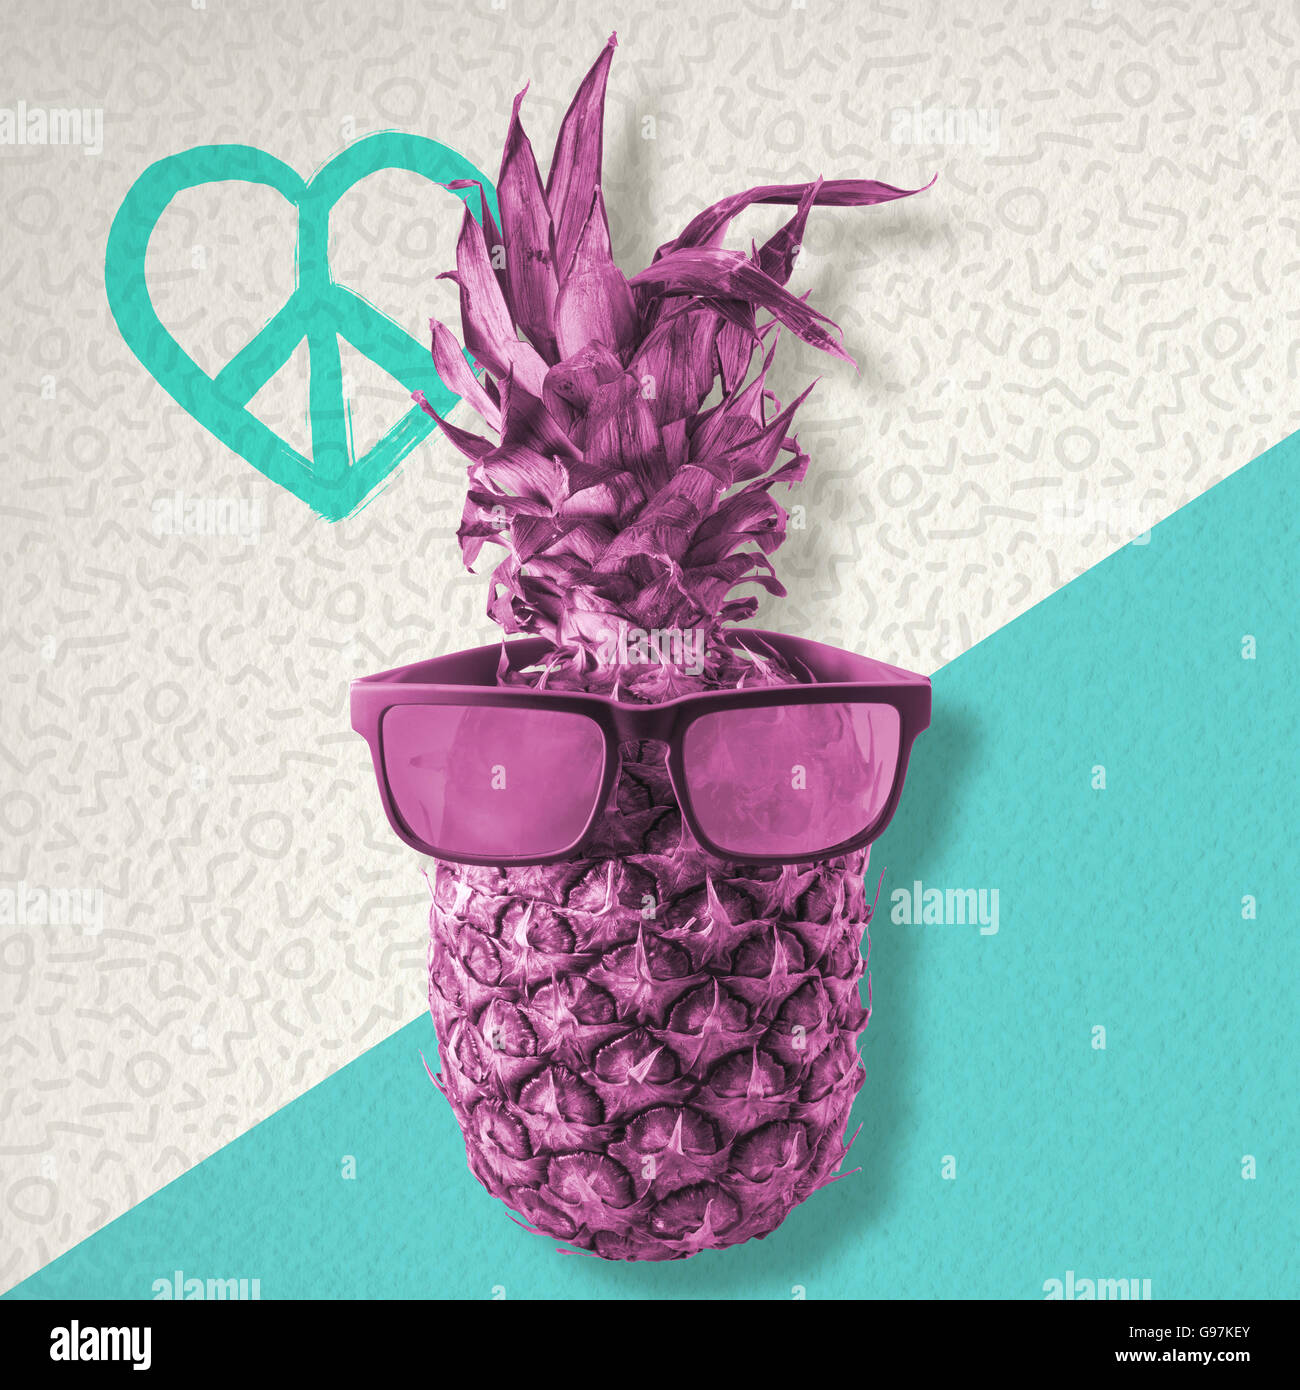 Estate felice concetto, divertimento ananas frutta indossando retrò hipster occhiali da sole su sfondo colorato con amore e simbolo di pace. Foto Stock